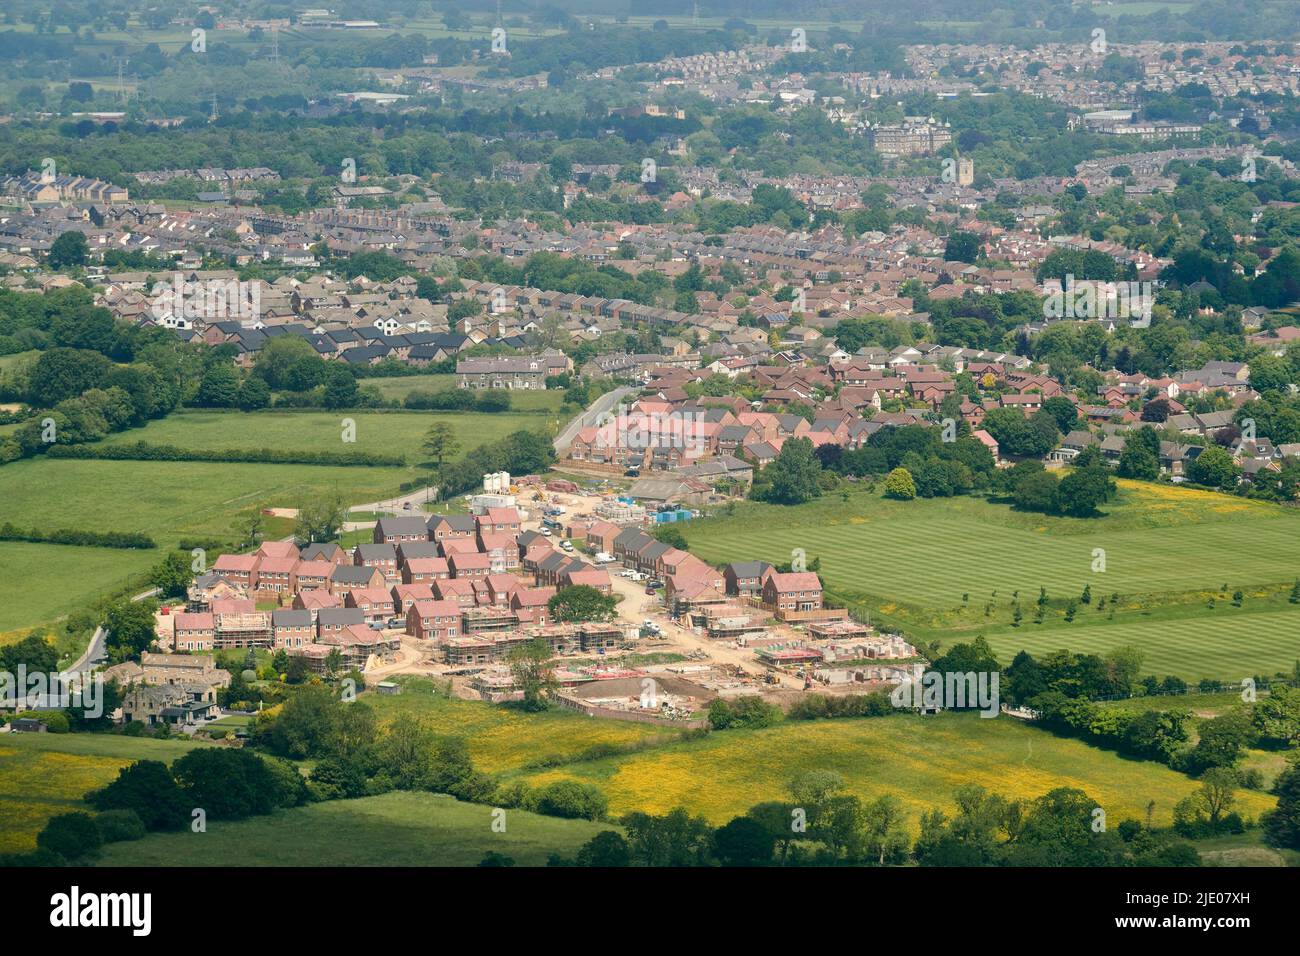 Une vue aérienne de la nouvelle maison sur le côté ouest de Harrogate, dans le nord du Yorkshire, dans le nord de l'Angleterre, au Royaume-Uni Banque D'Images